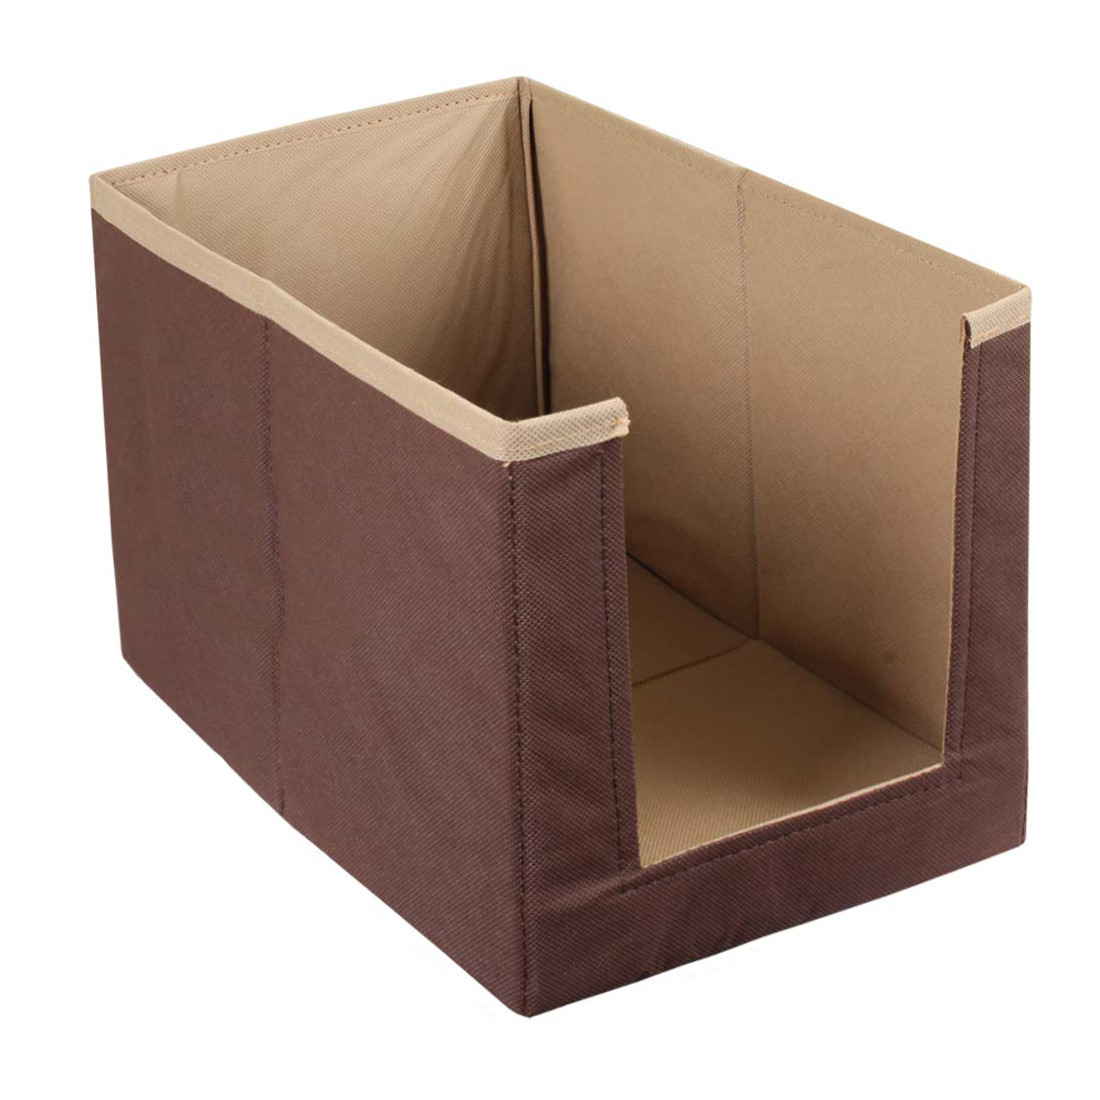 Kuber Industries Non Woven Wardrobe Cloths Organizer-Shirt Stacker Storage Box (Brown & Light Brown)